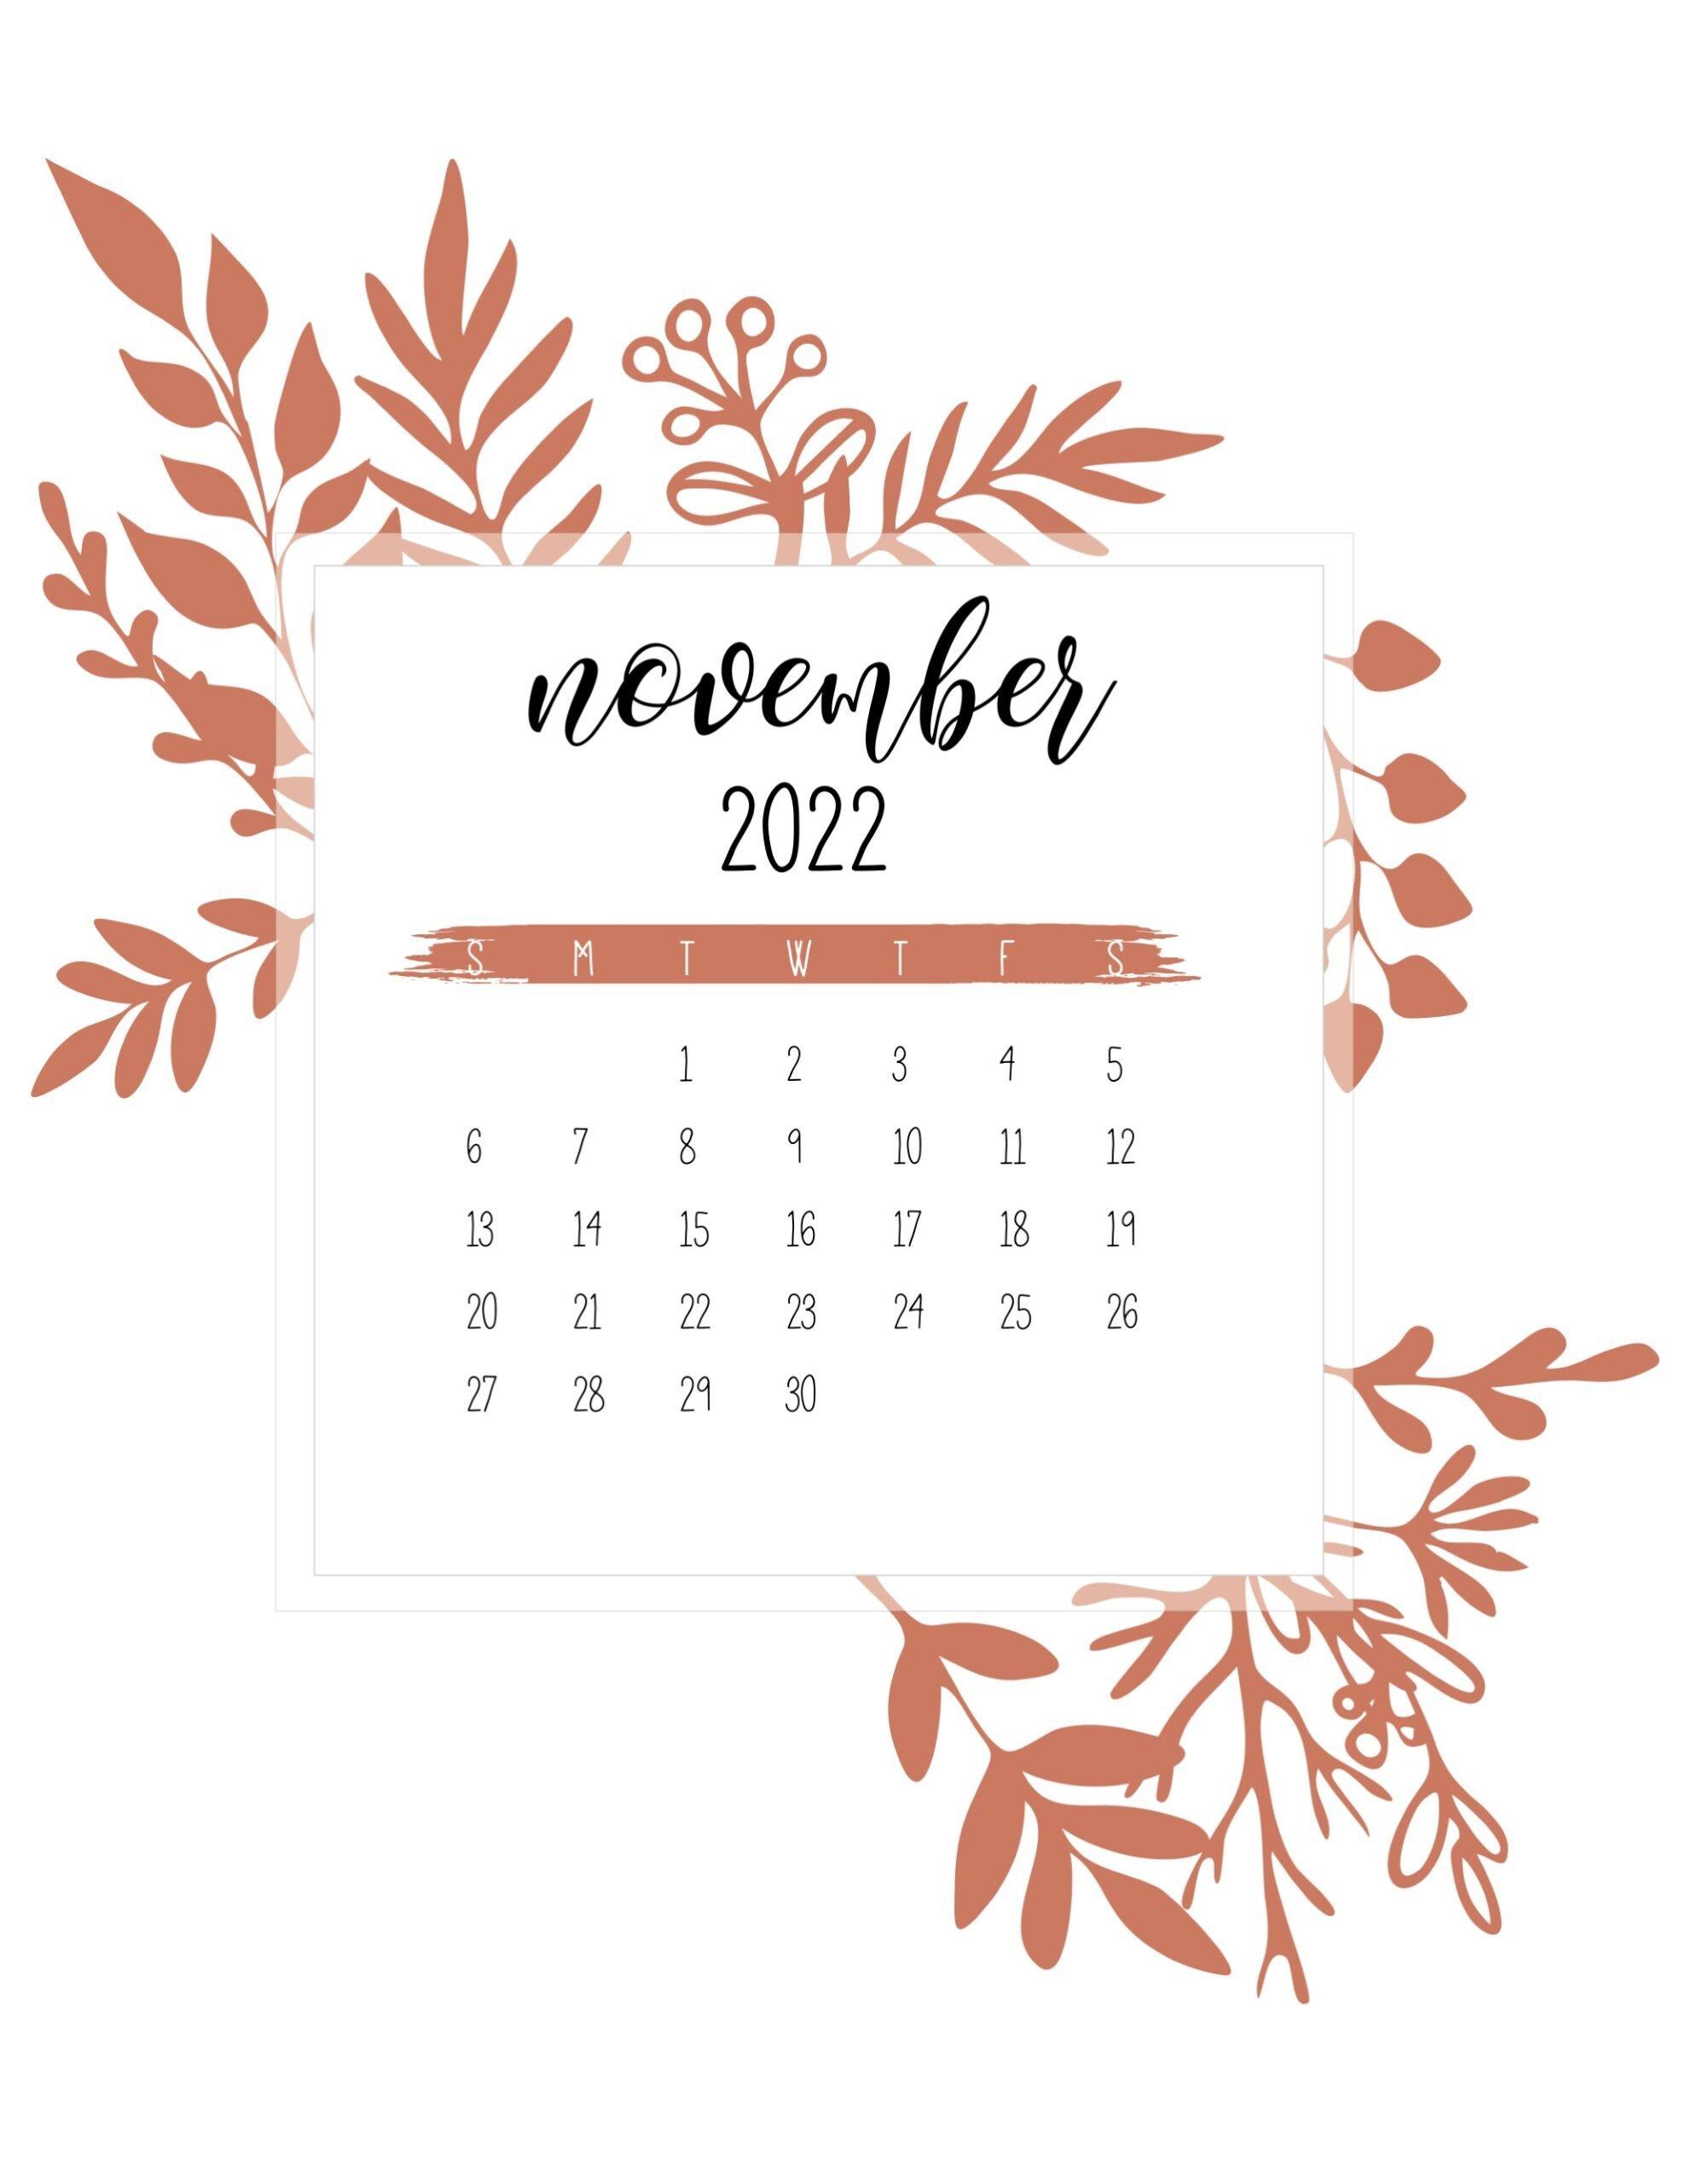 Free November 2019 wallpaper calendars  Flipsnack Blog